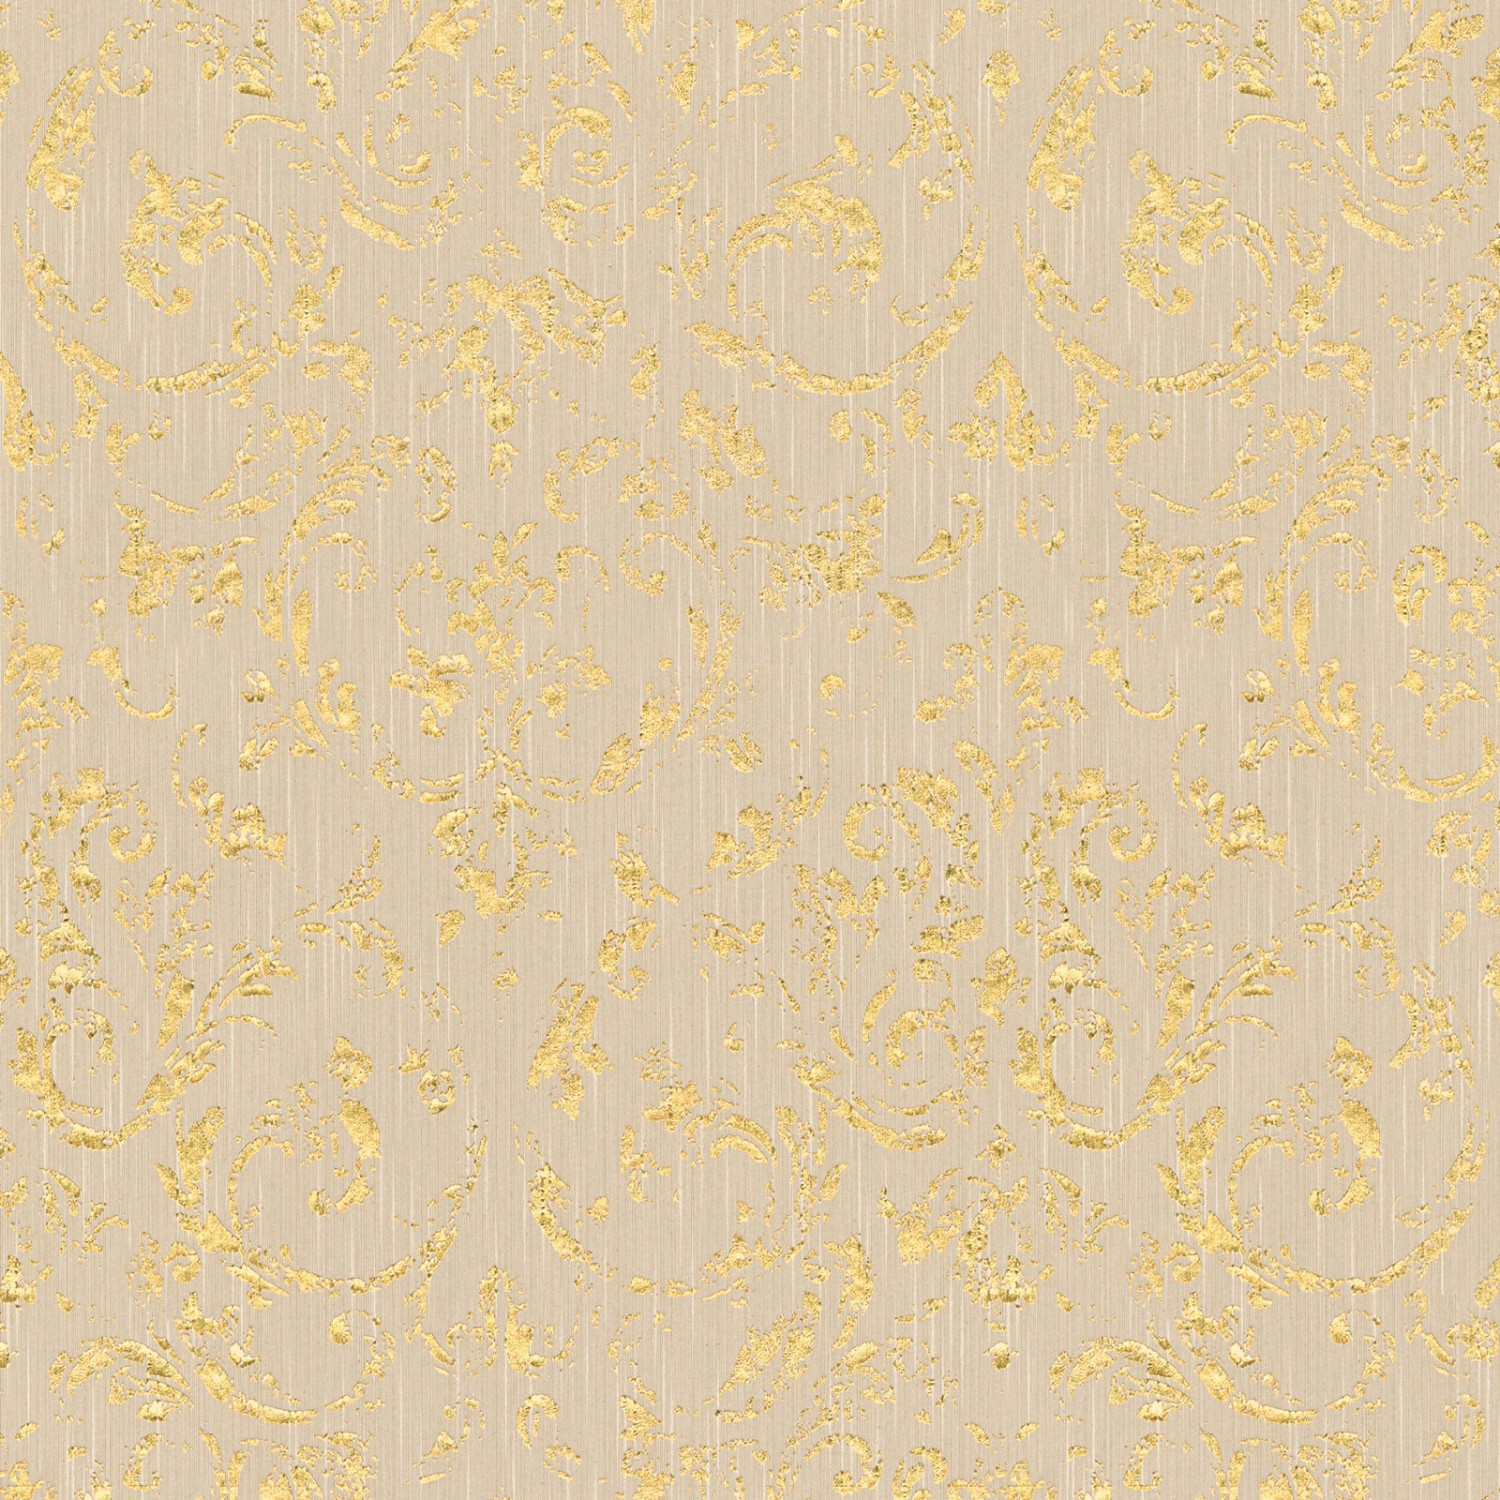 Bricoflor Ornament Tapete Beige Gold Glitzer Vliestapete mit Textil Barock Muster für Wohn und Esszimmer Vlies Textiltapete Edel mit Metallic Effekt von Bricoflor